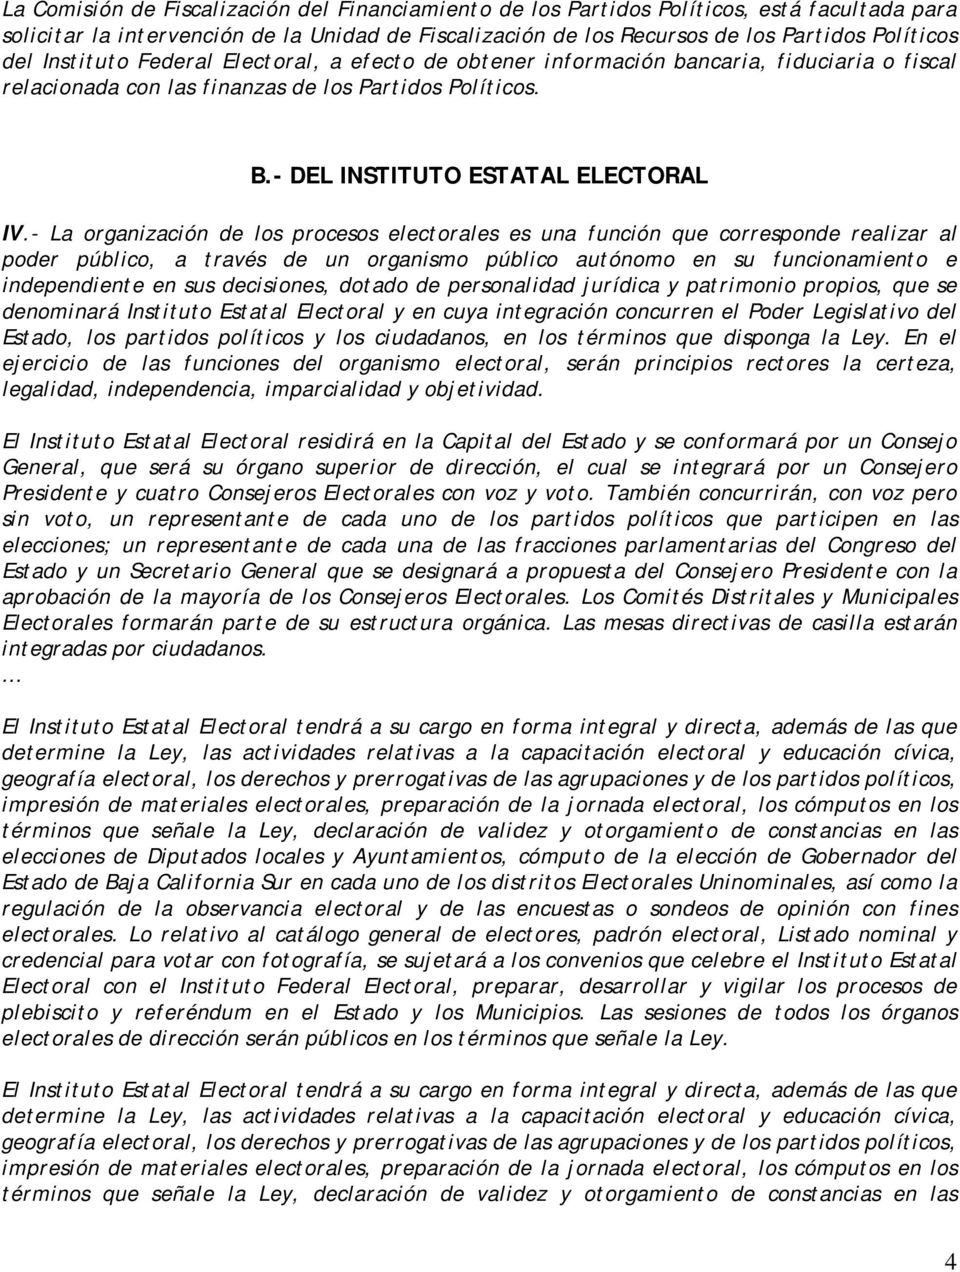 - La organización de los procesos electorales es una función que corresponde realizar al poder público, a través de un organismo público autónomo en su funcionamiento e independiente en sus